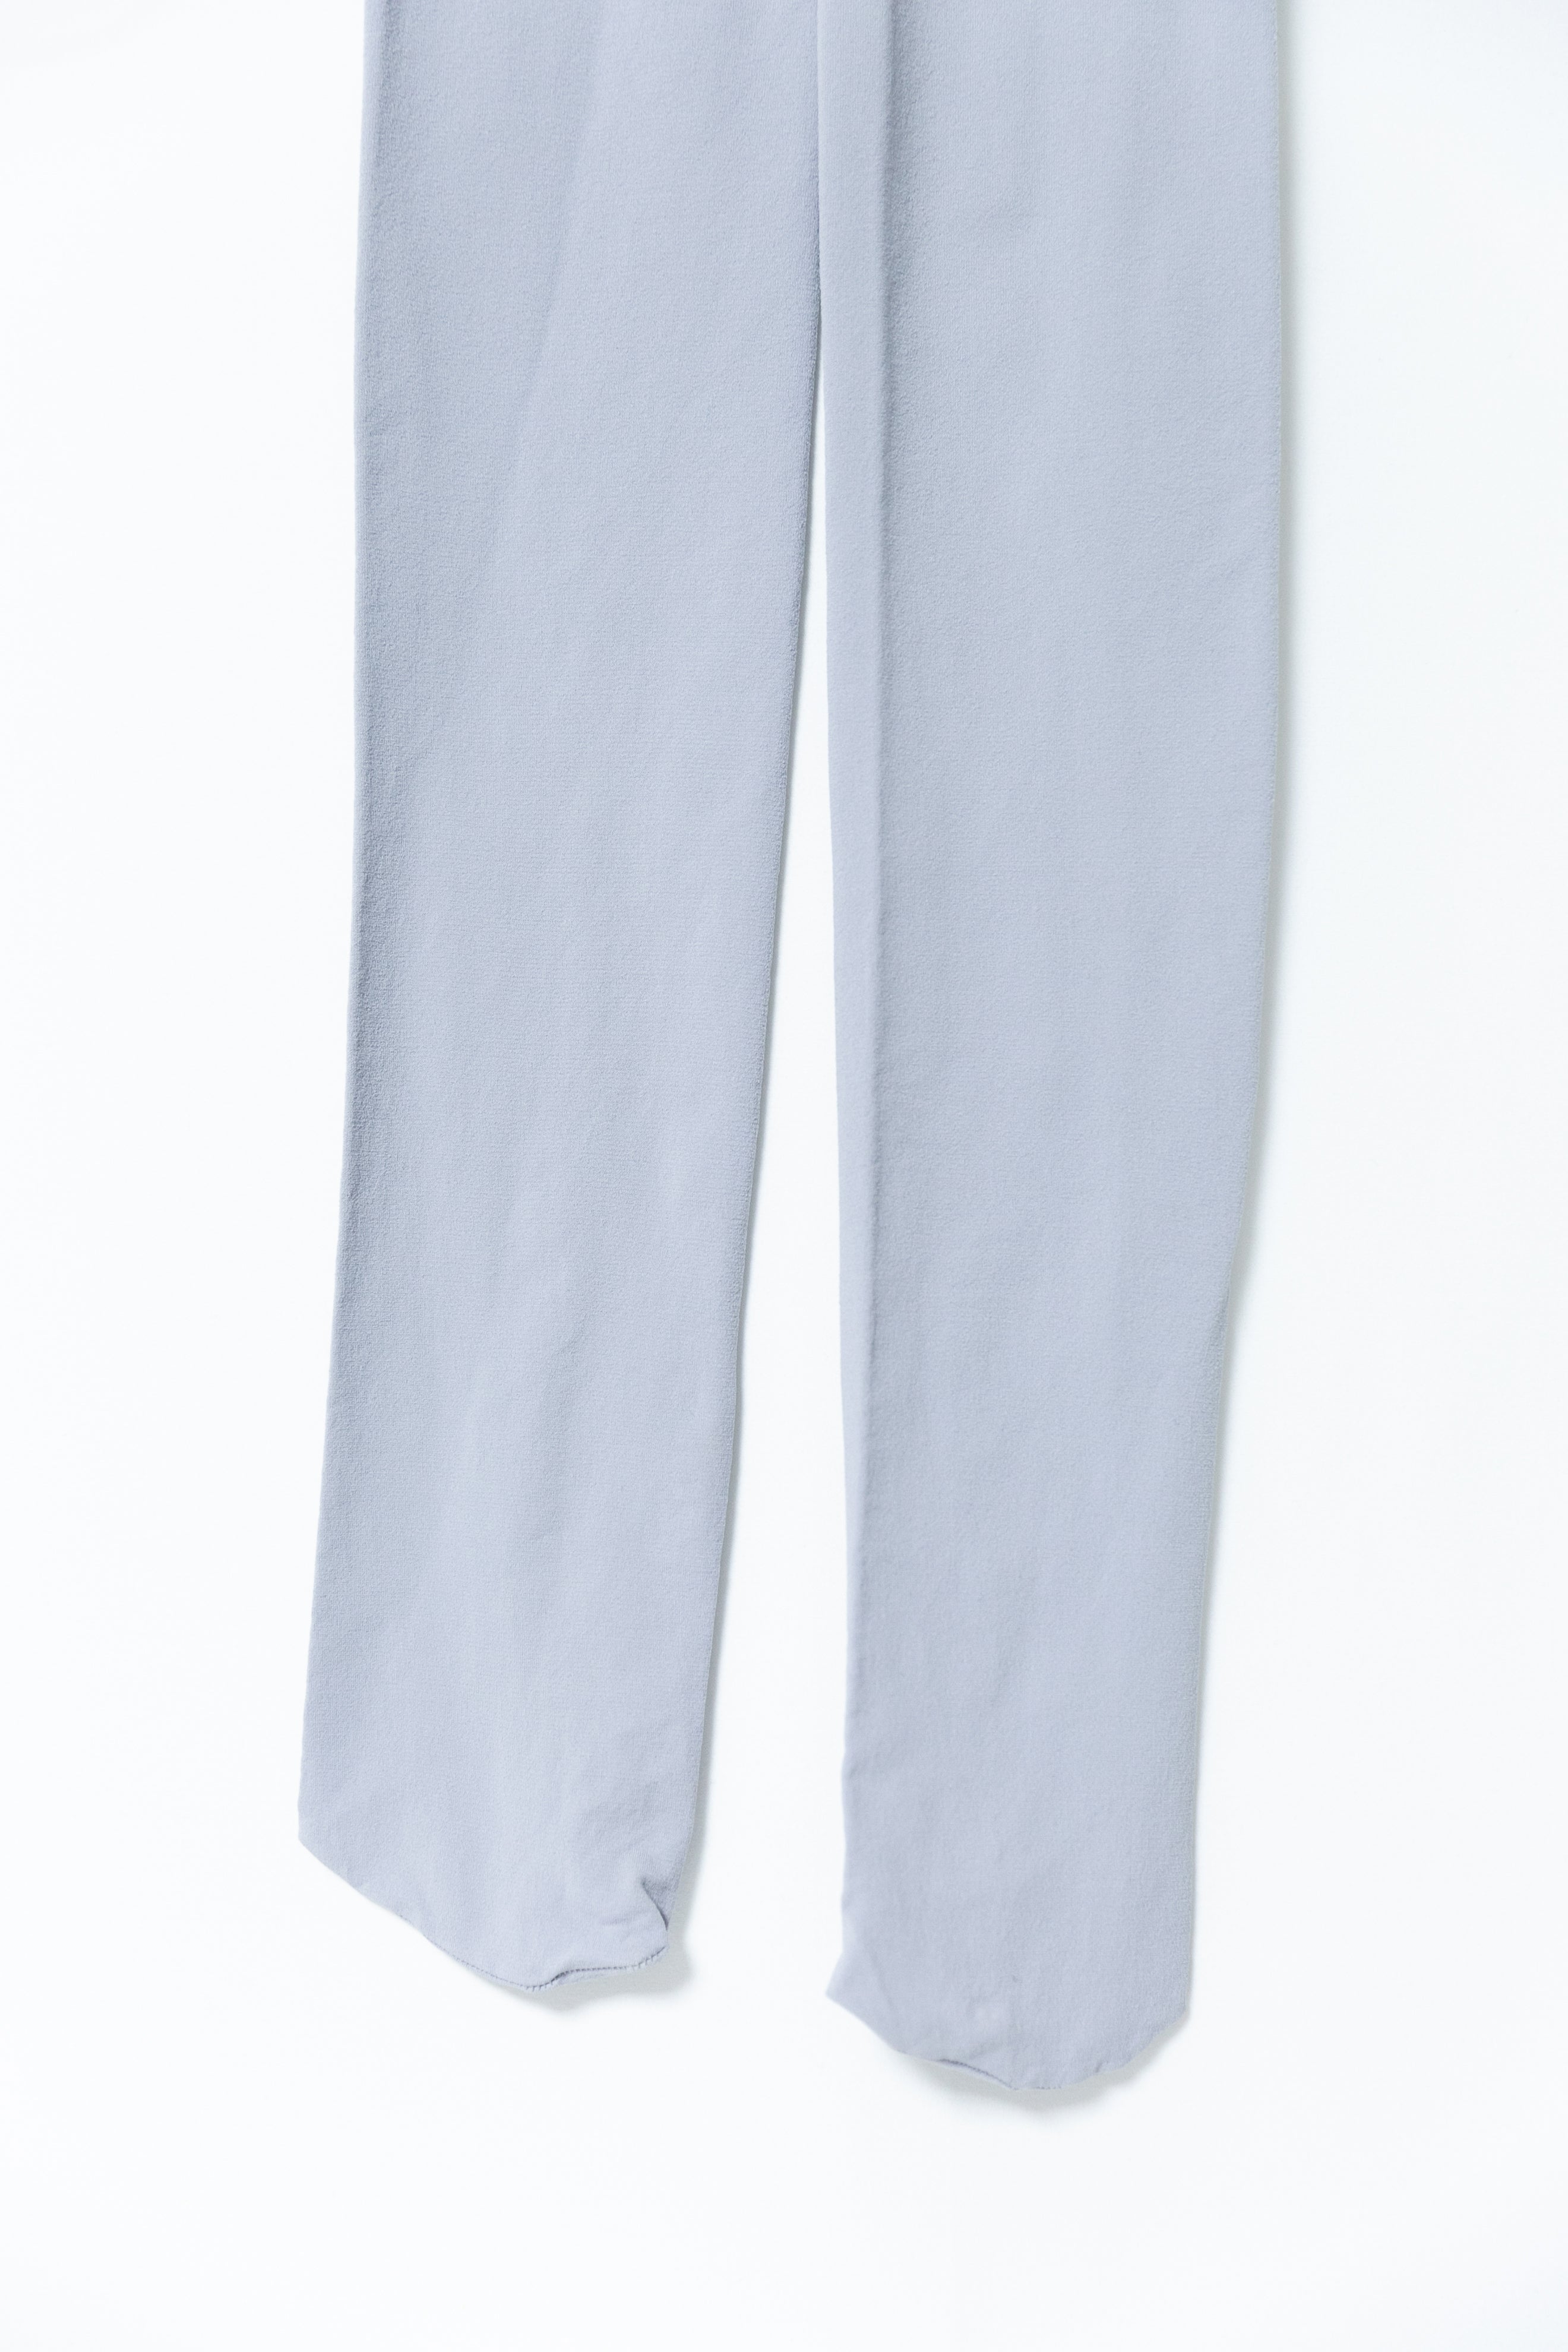 mochi color tights(5colors)